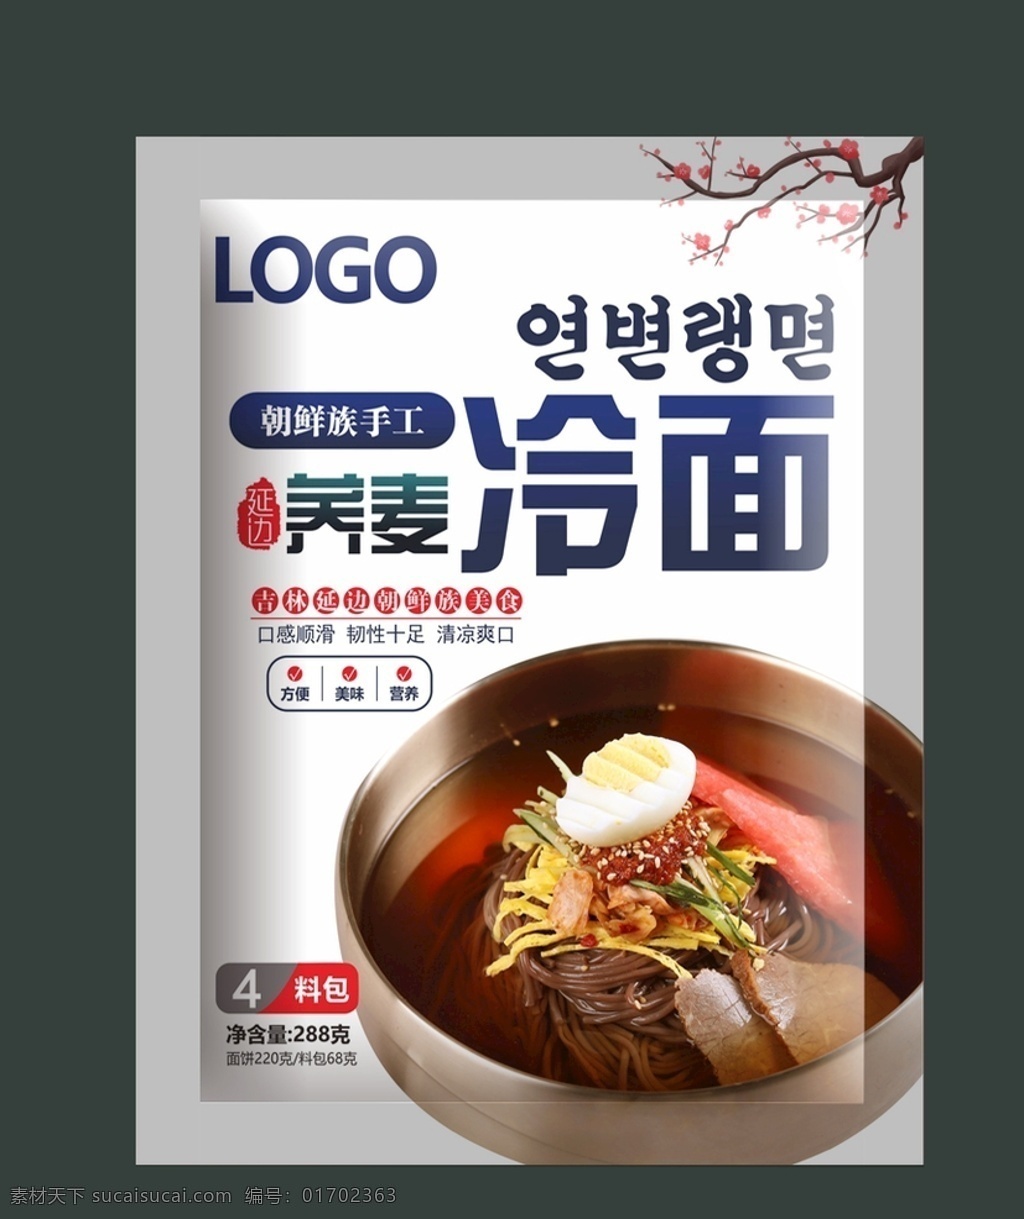 荞麦冷面图片 荞麦冷面 面条 冷面 韩国 韩国冷面 朝鲜冷面 东北冷面 荞麦 荞麦面 包装设计